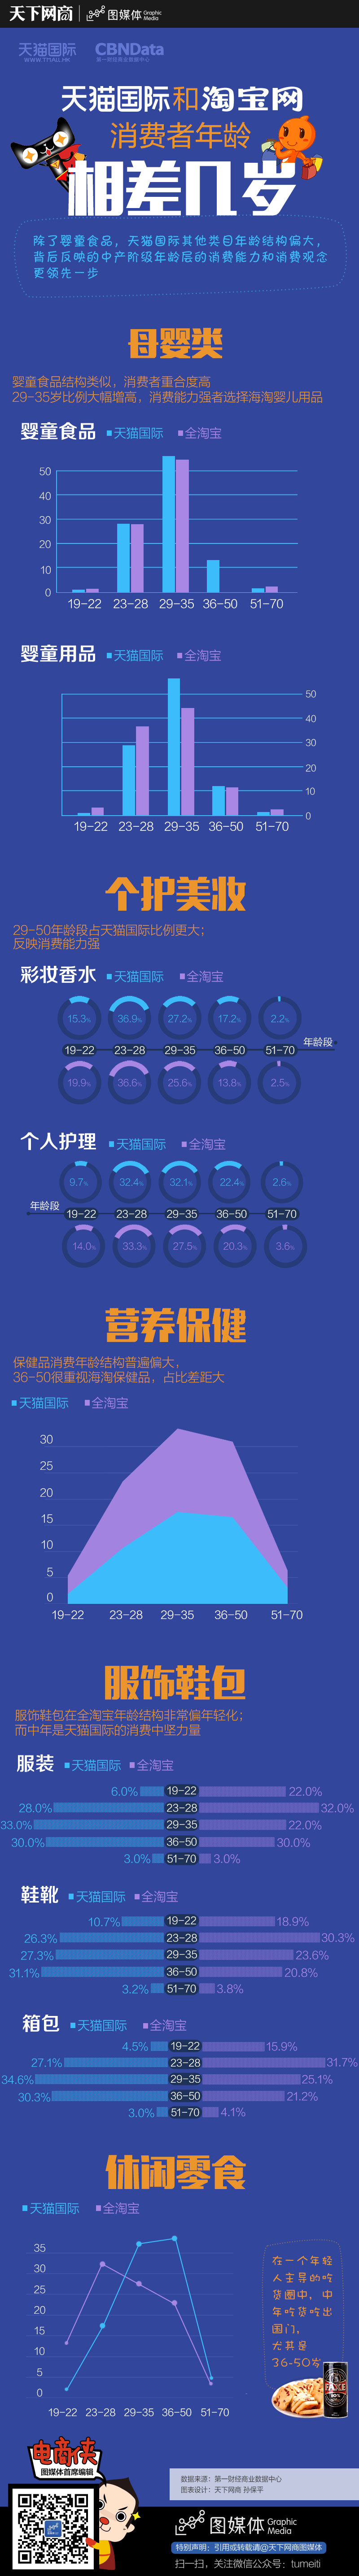 图谱：天猫国际和淘宝网消费者年龄相差几岁